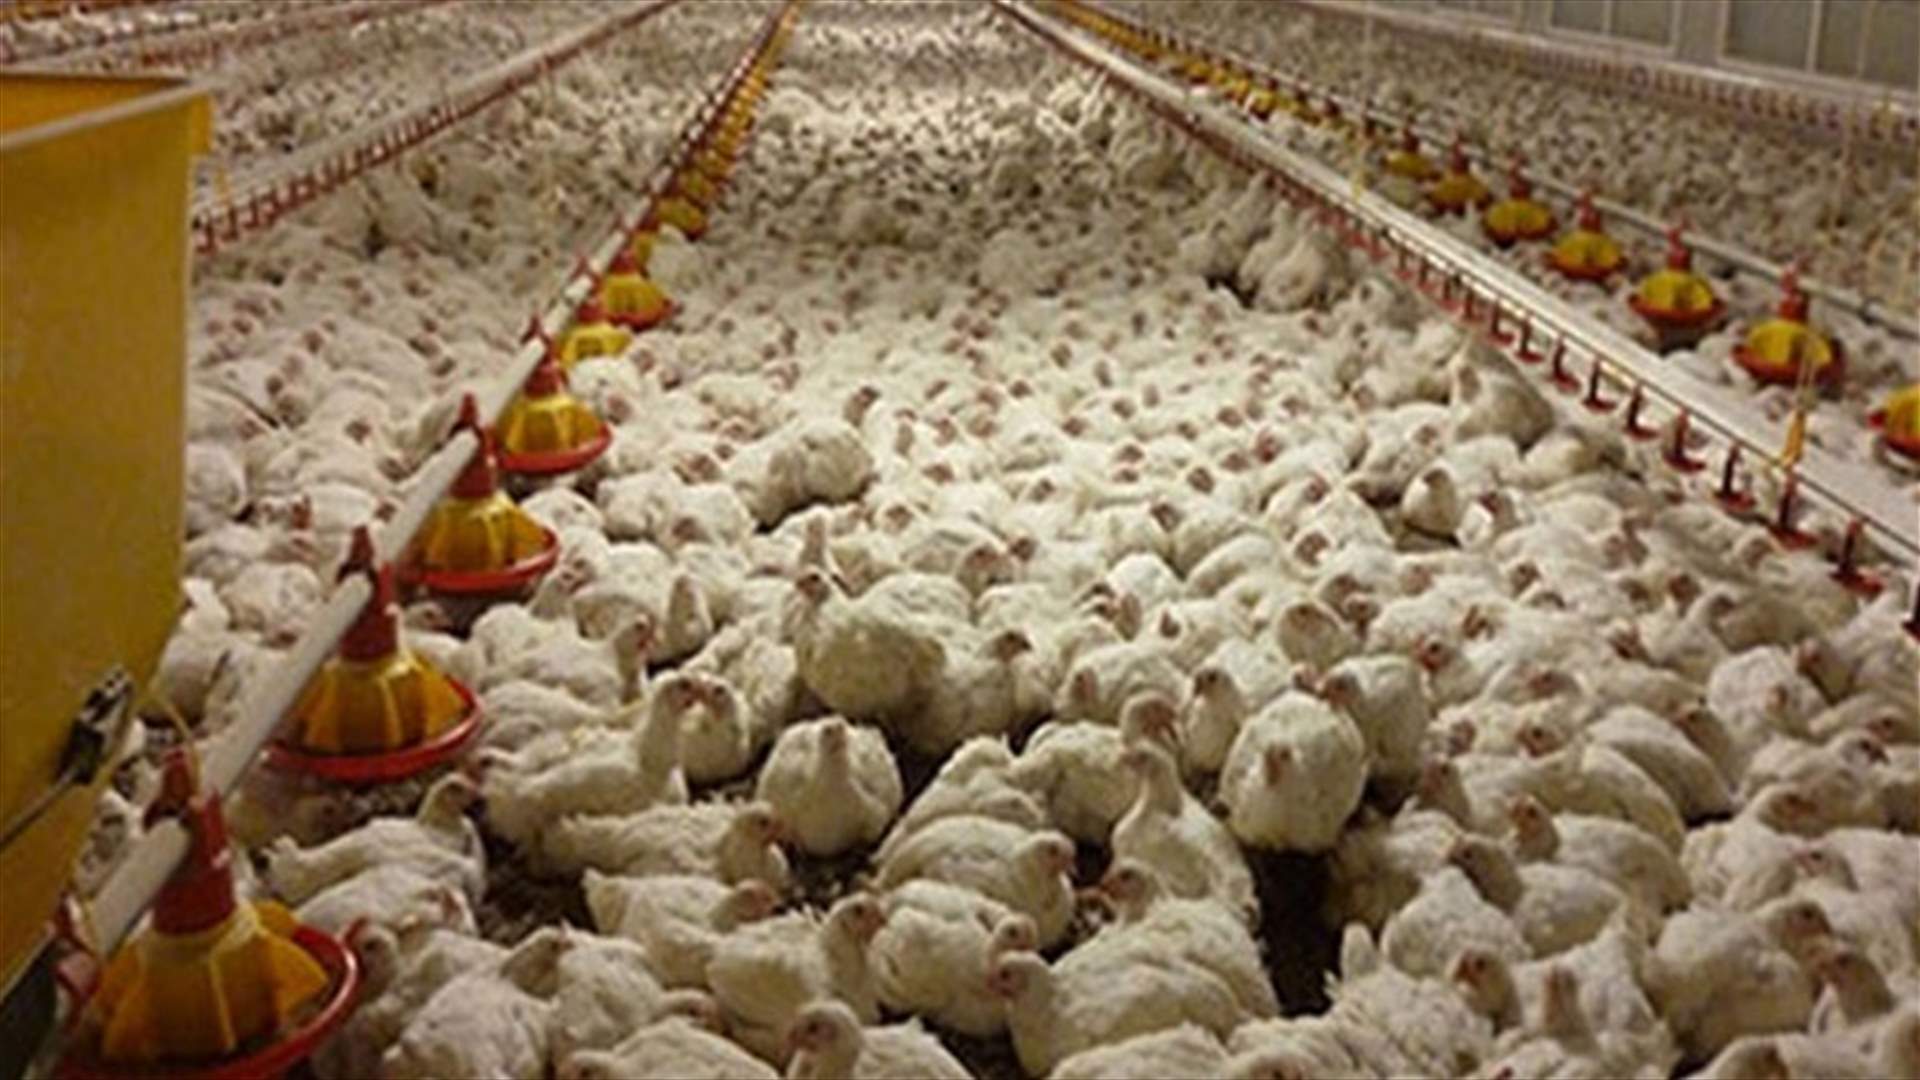 Kuwait reports outbreak of H5N8 bird flu - OIE